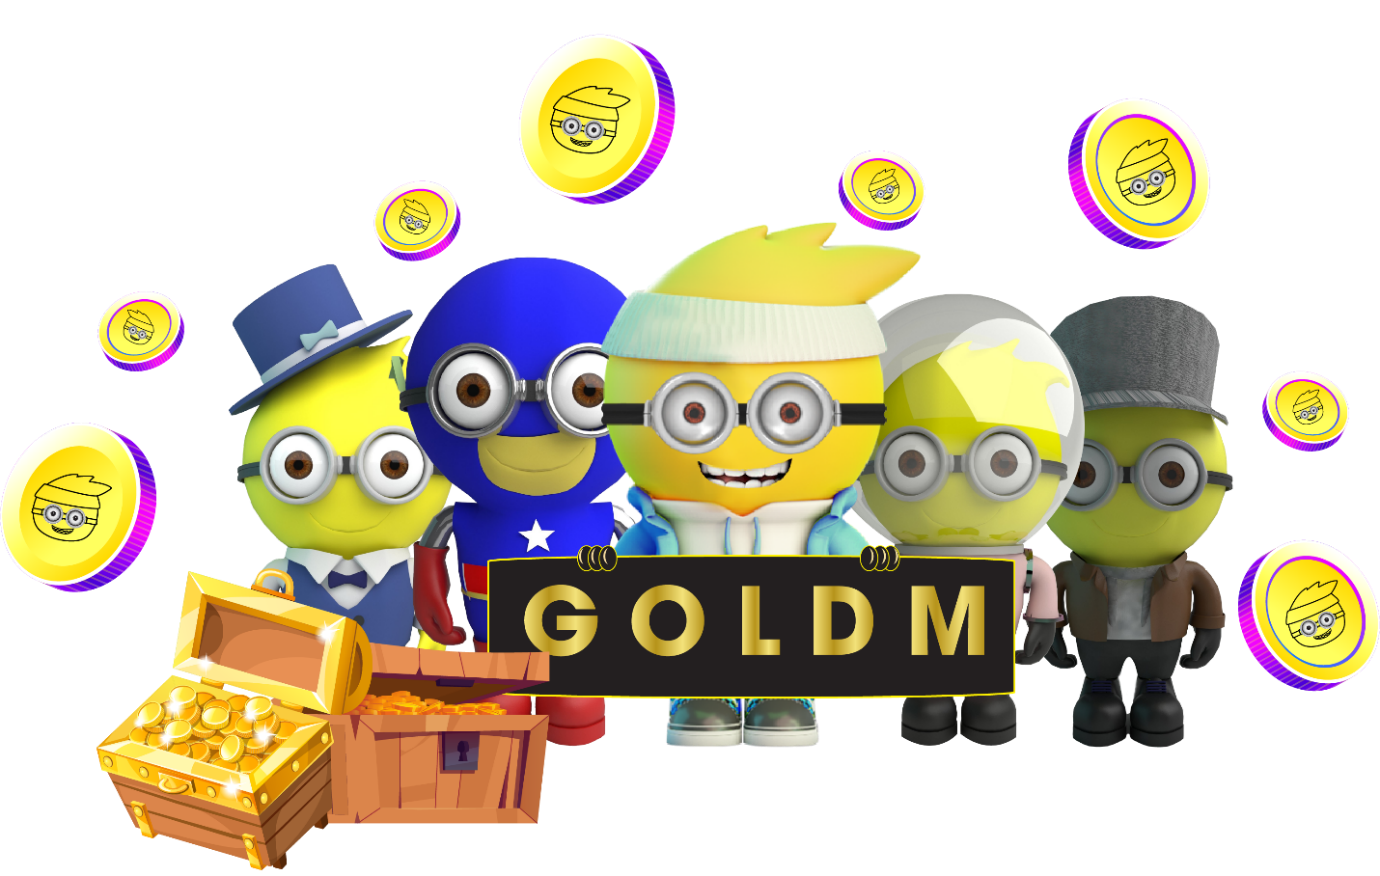 Golden Planet Das neueste aufregende Spiel zum Sammeln von Erfahrung für Spieler